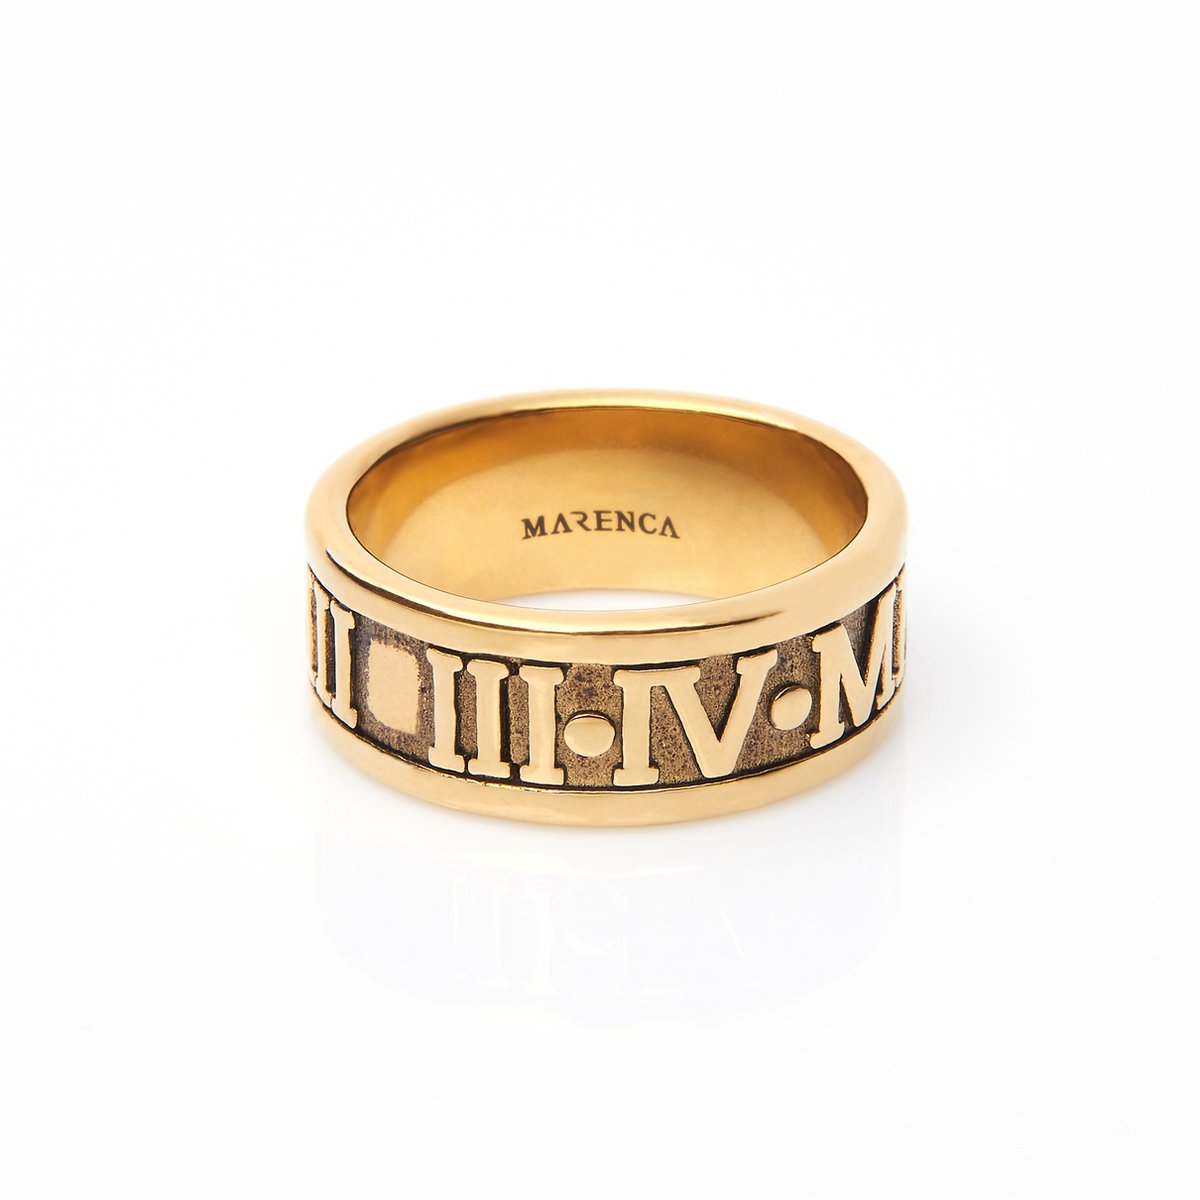 Marenca gouden heren ring met Romeinse cijfers (S)